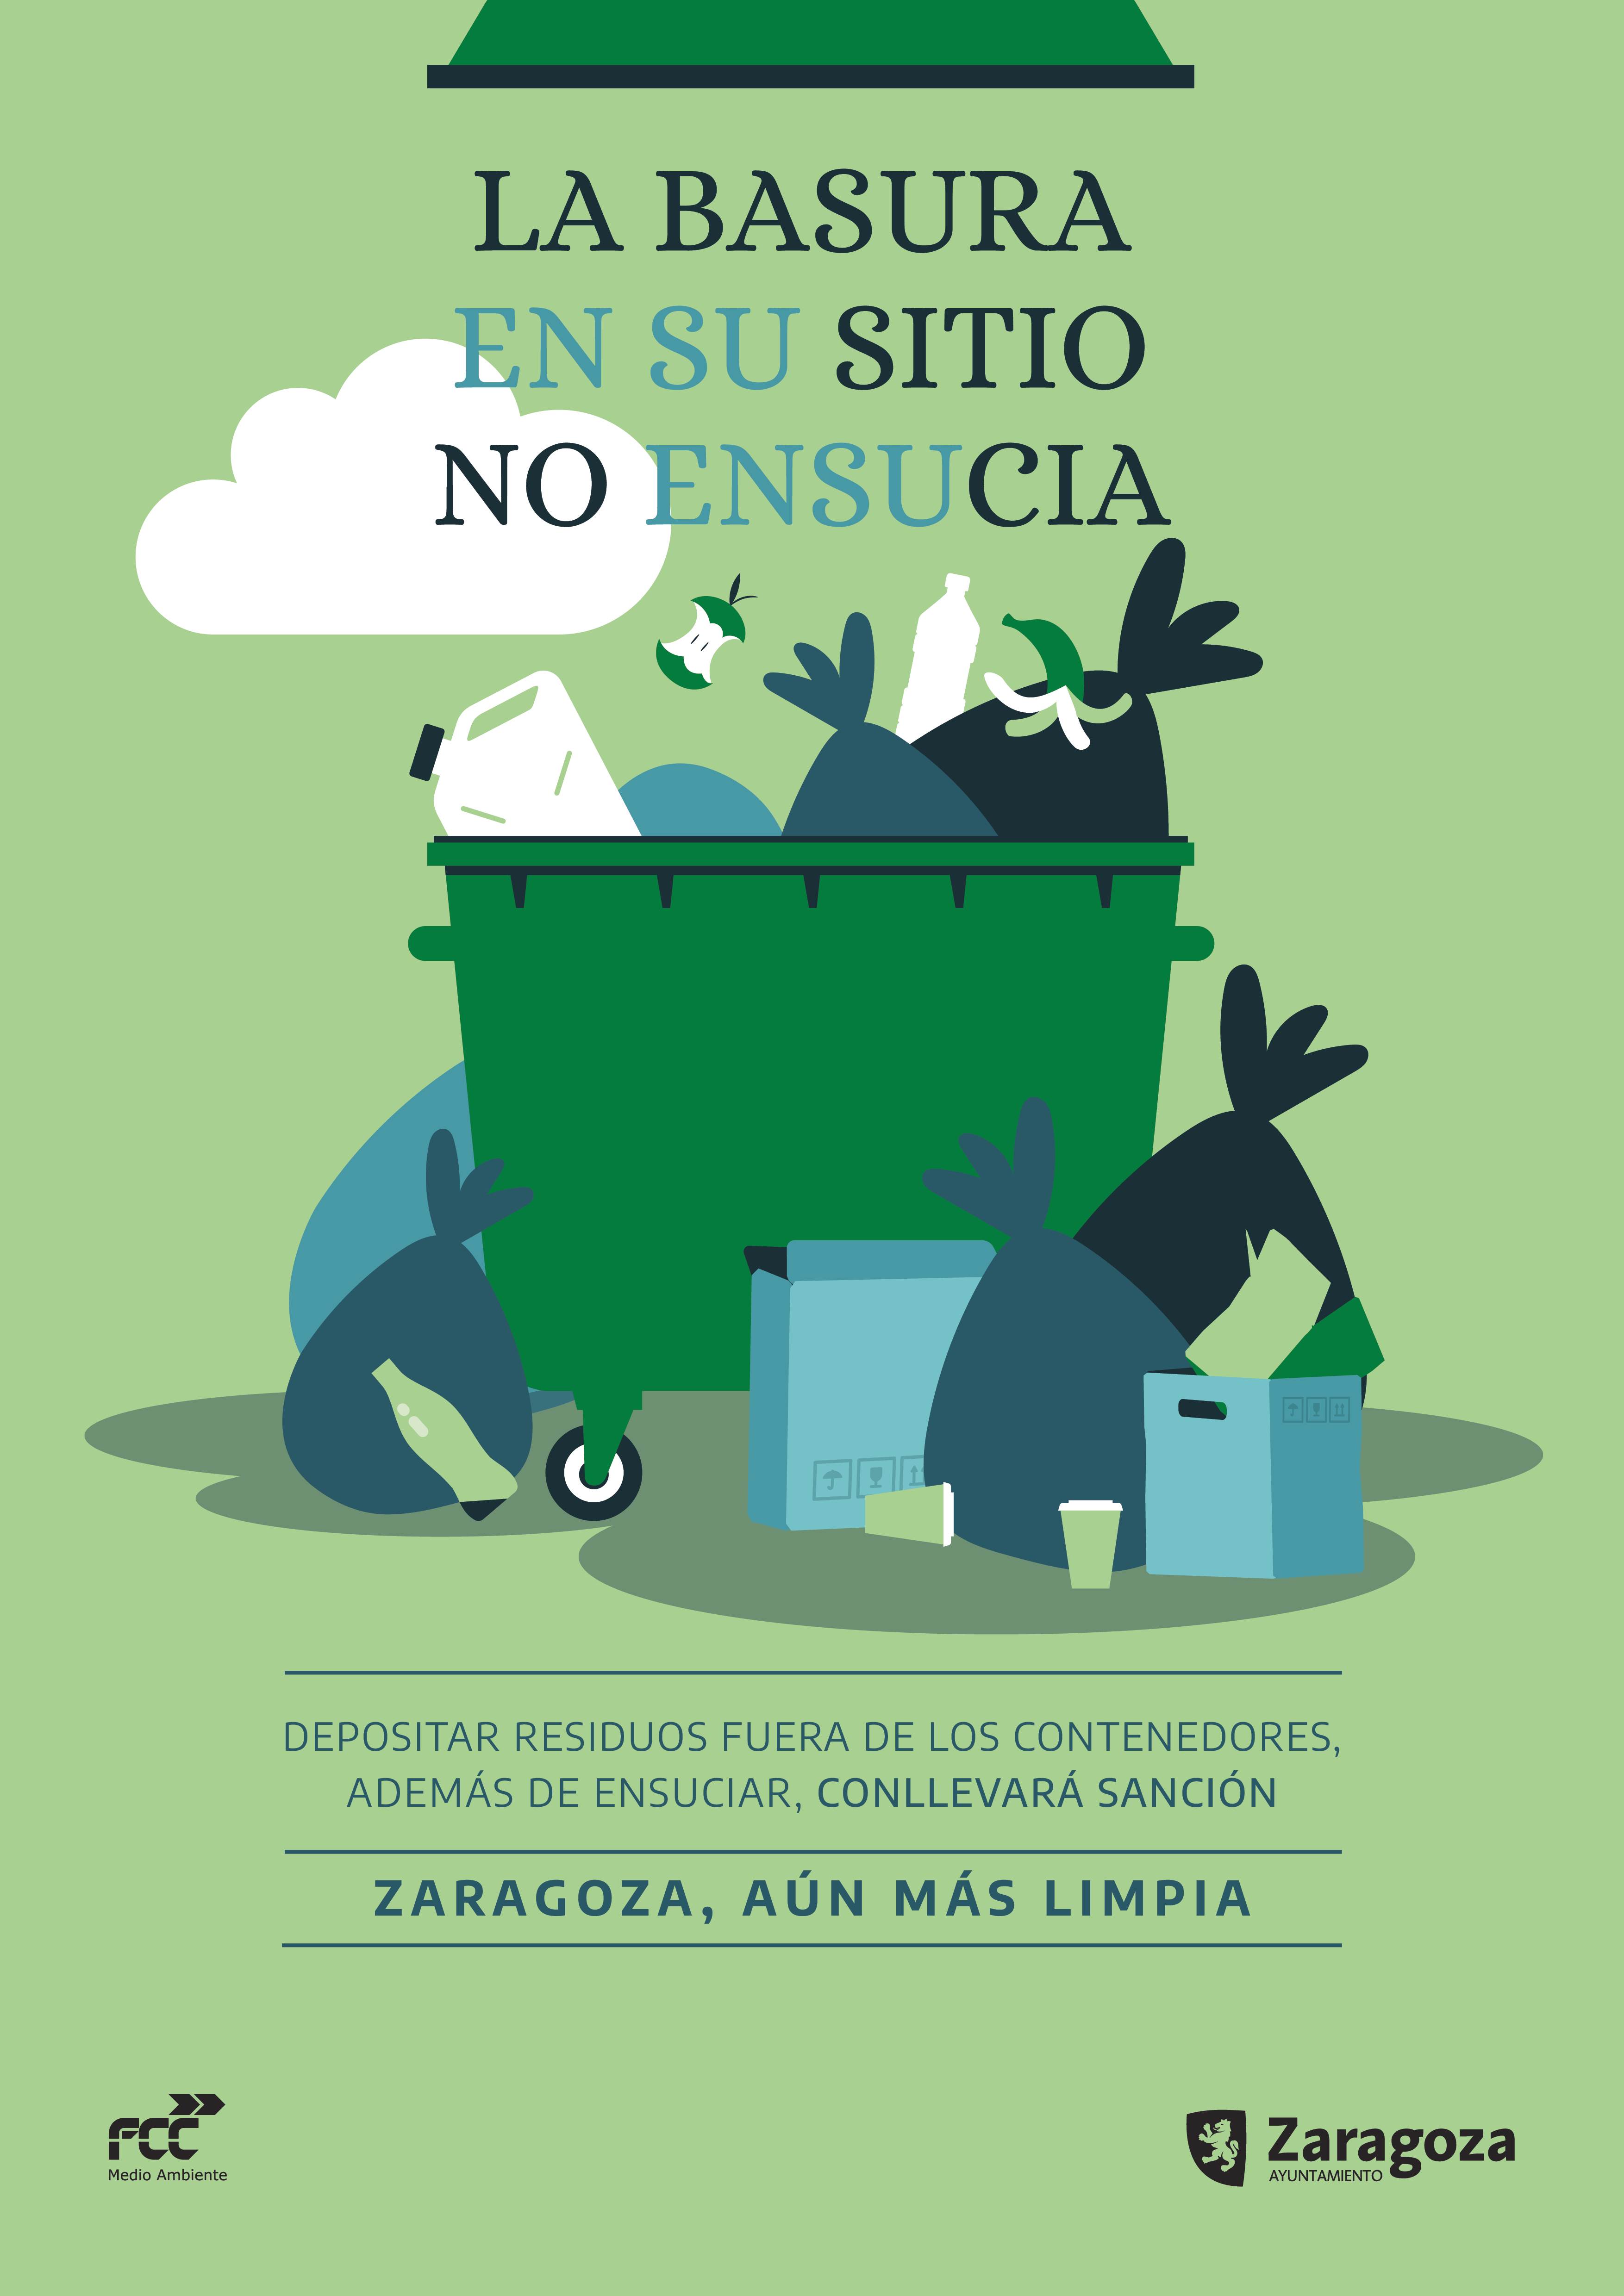 Pulsa para ver la imagen en grande: Campaña concienciación limpieza contenedores basura